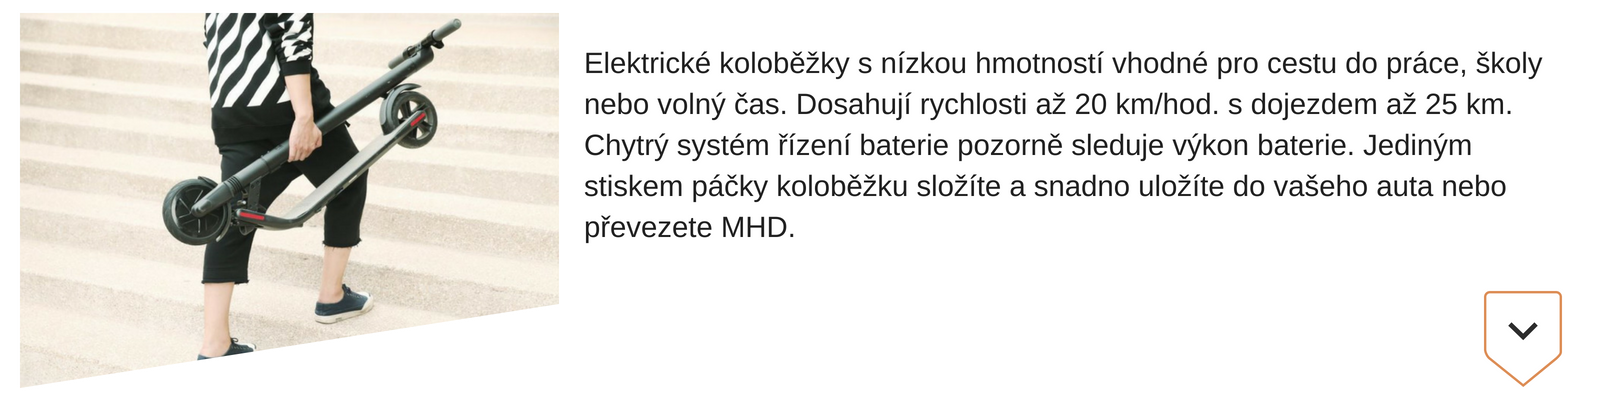 text_kategie_kolobezka